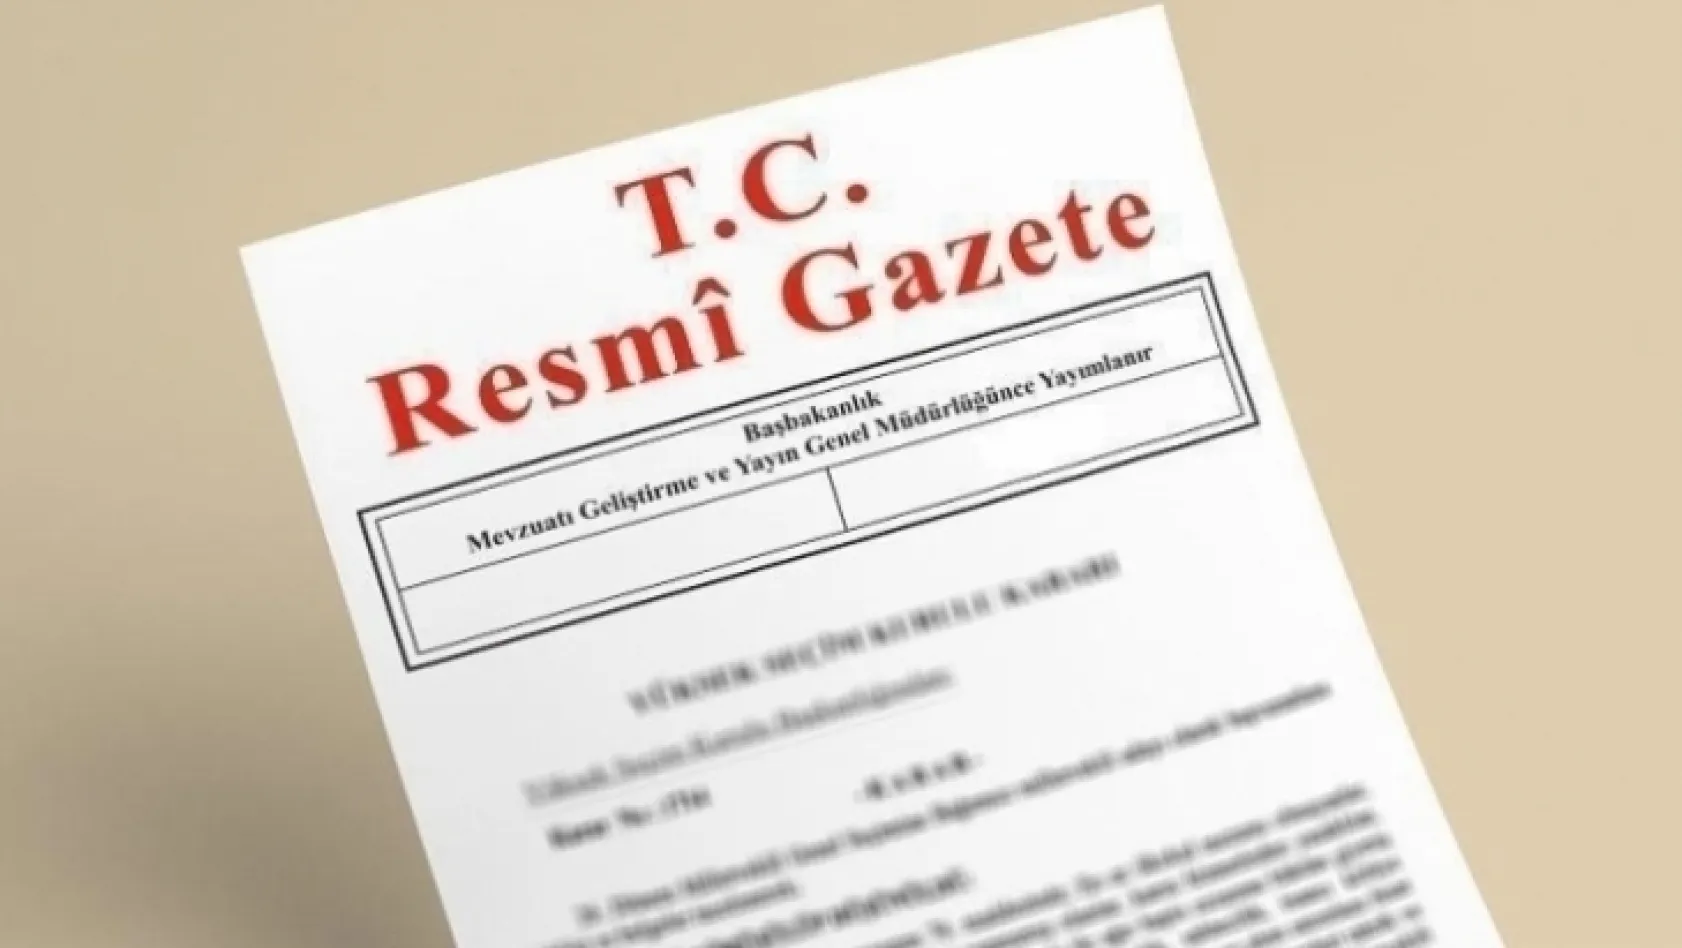 Atama kararları Resmi Gazete'de yayımlandı